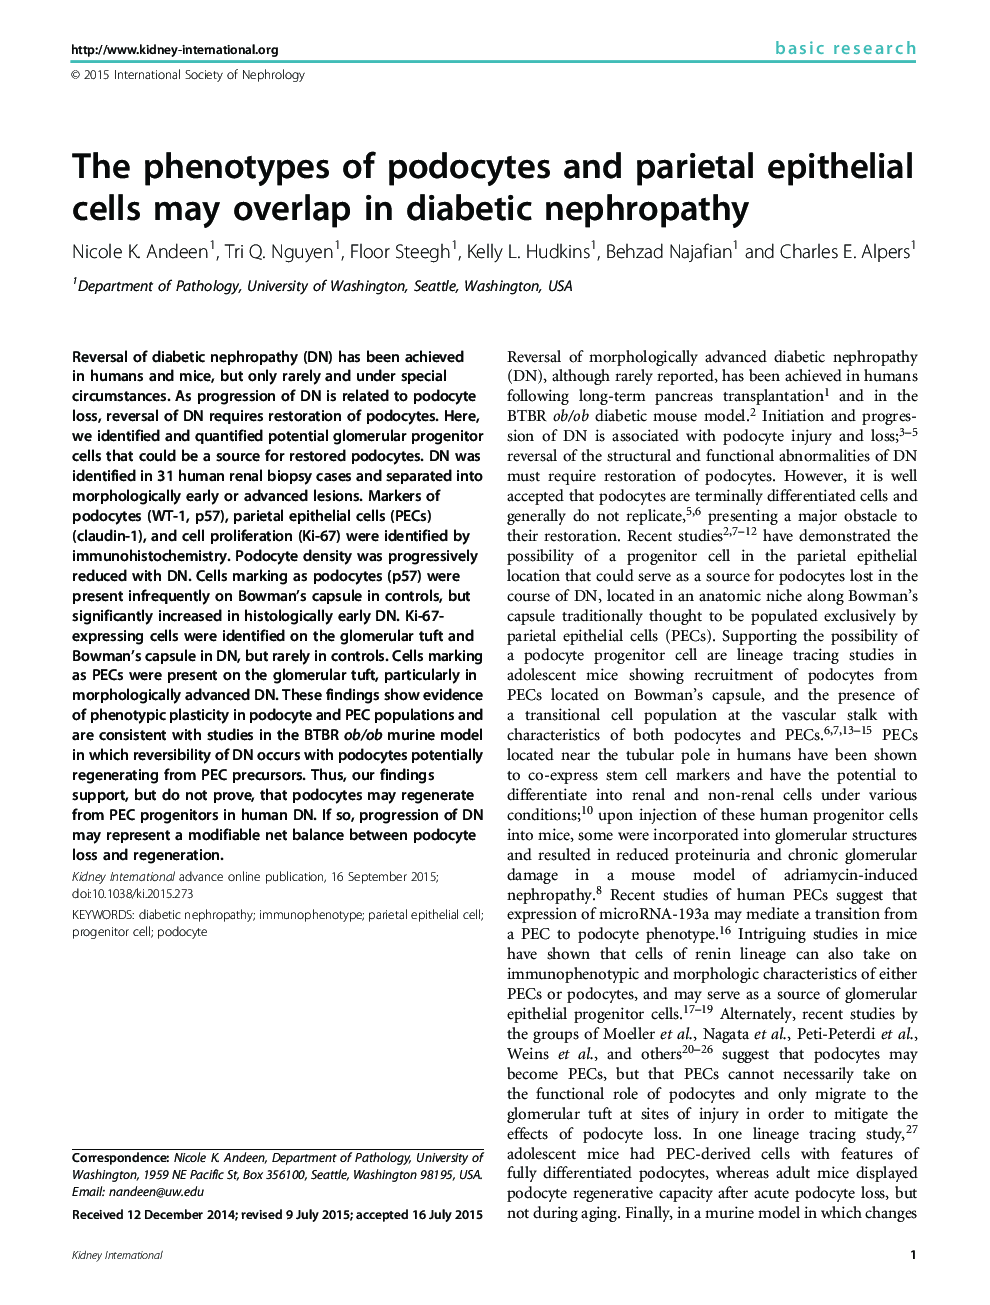 فنوتیپ های پادوکسی و سلول های اپیتلیال پاریتال ممکن است در نفروپاتی دیابتی 